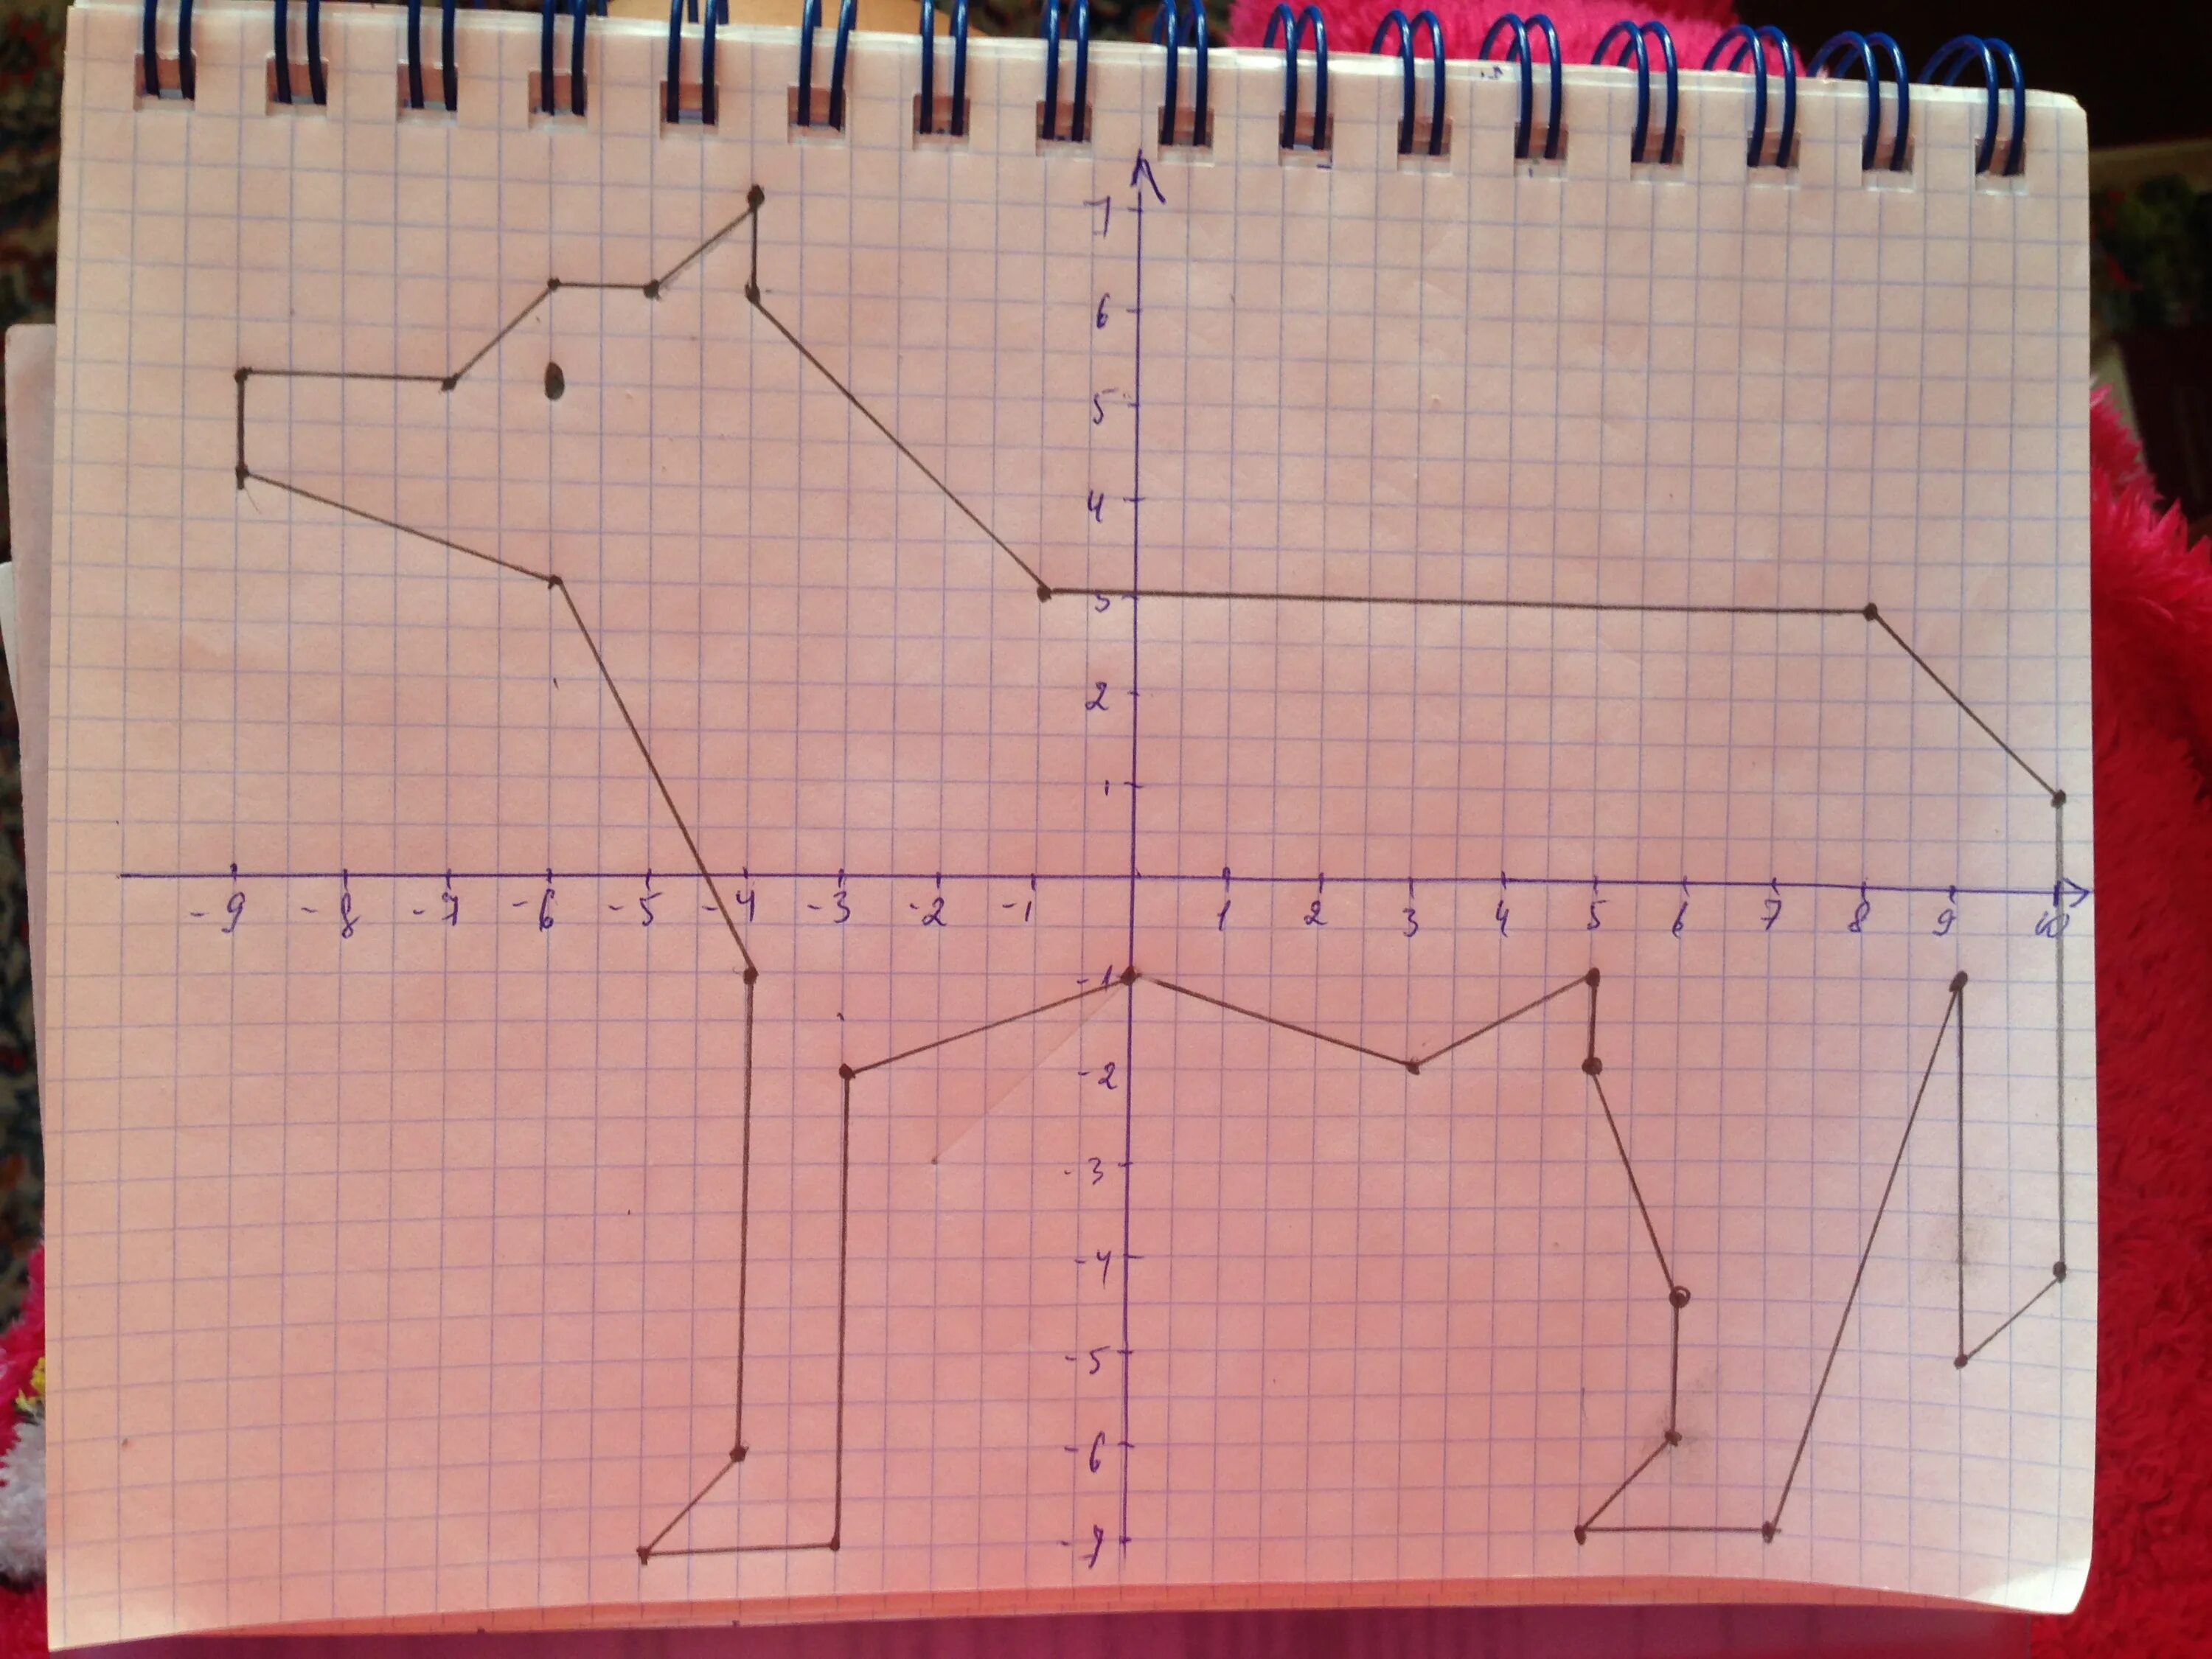 Волк 1 9 5. Волк на координатной плоскости. Рисунки на координатной плоскости. Рисунок на координатной прямой. Координатная плоскость волк 1 -9 5.